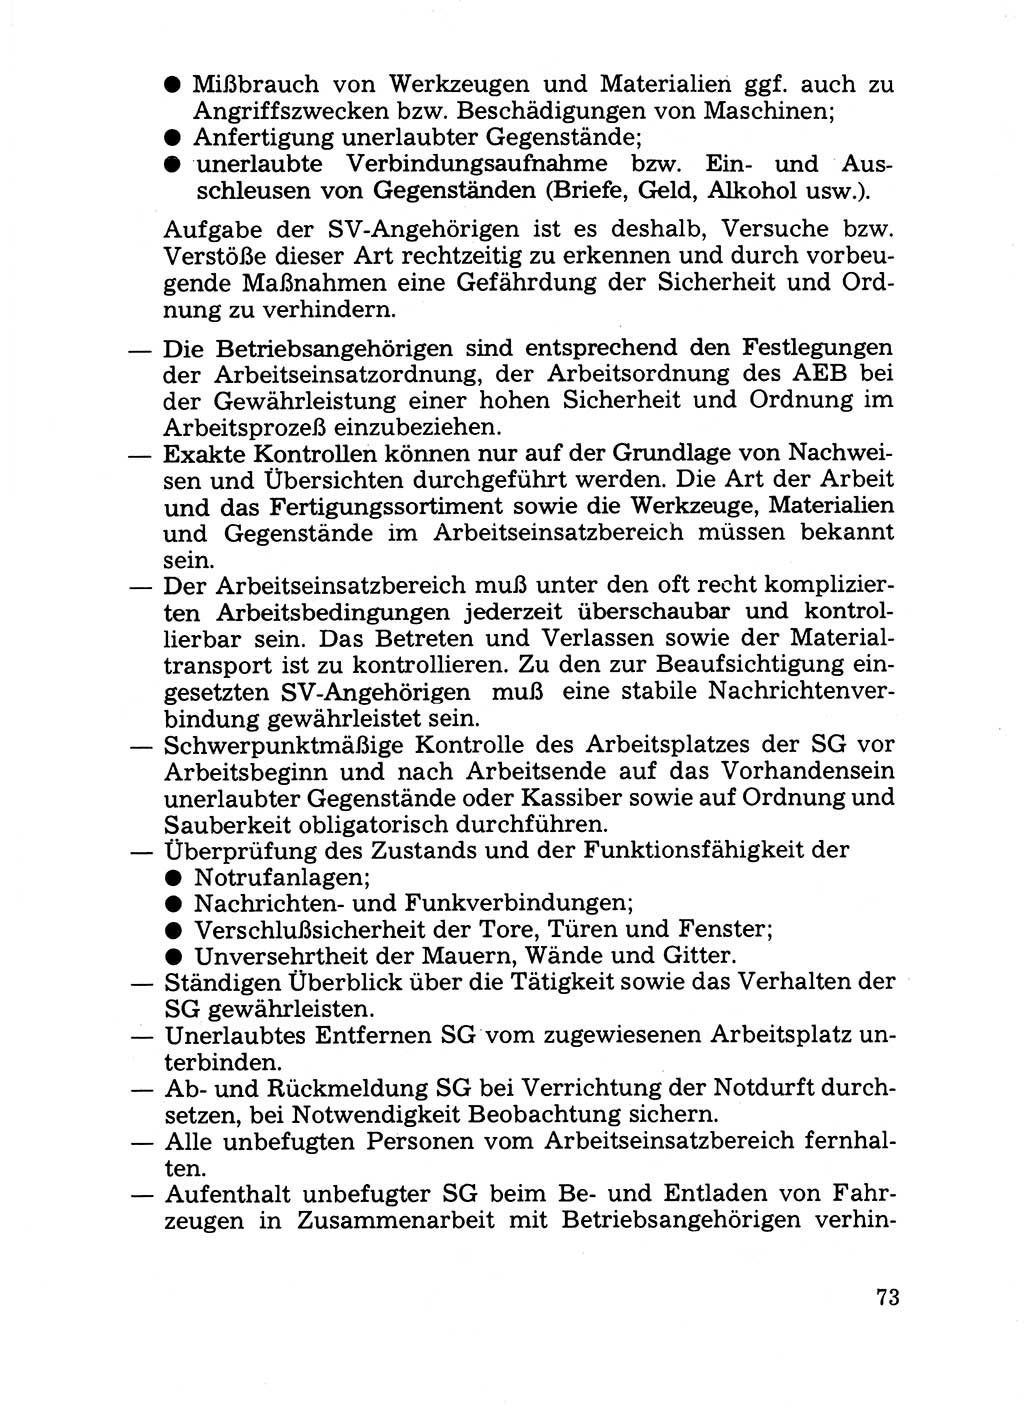 Handbuch für operative Dienste, Abteilung Strafvollzug (SV) [Ministerium des Innern (MdI) Deutsche Demokratische Republik (DDR)] 1981, Seite 73 (Hb. op. D. Abt. SV MdI DDR 1981, S. 73)